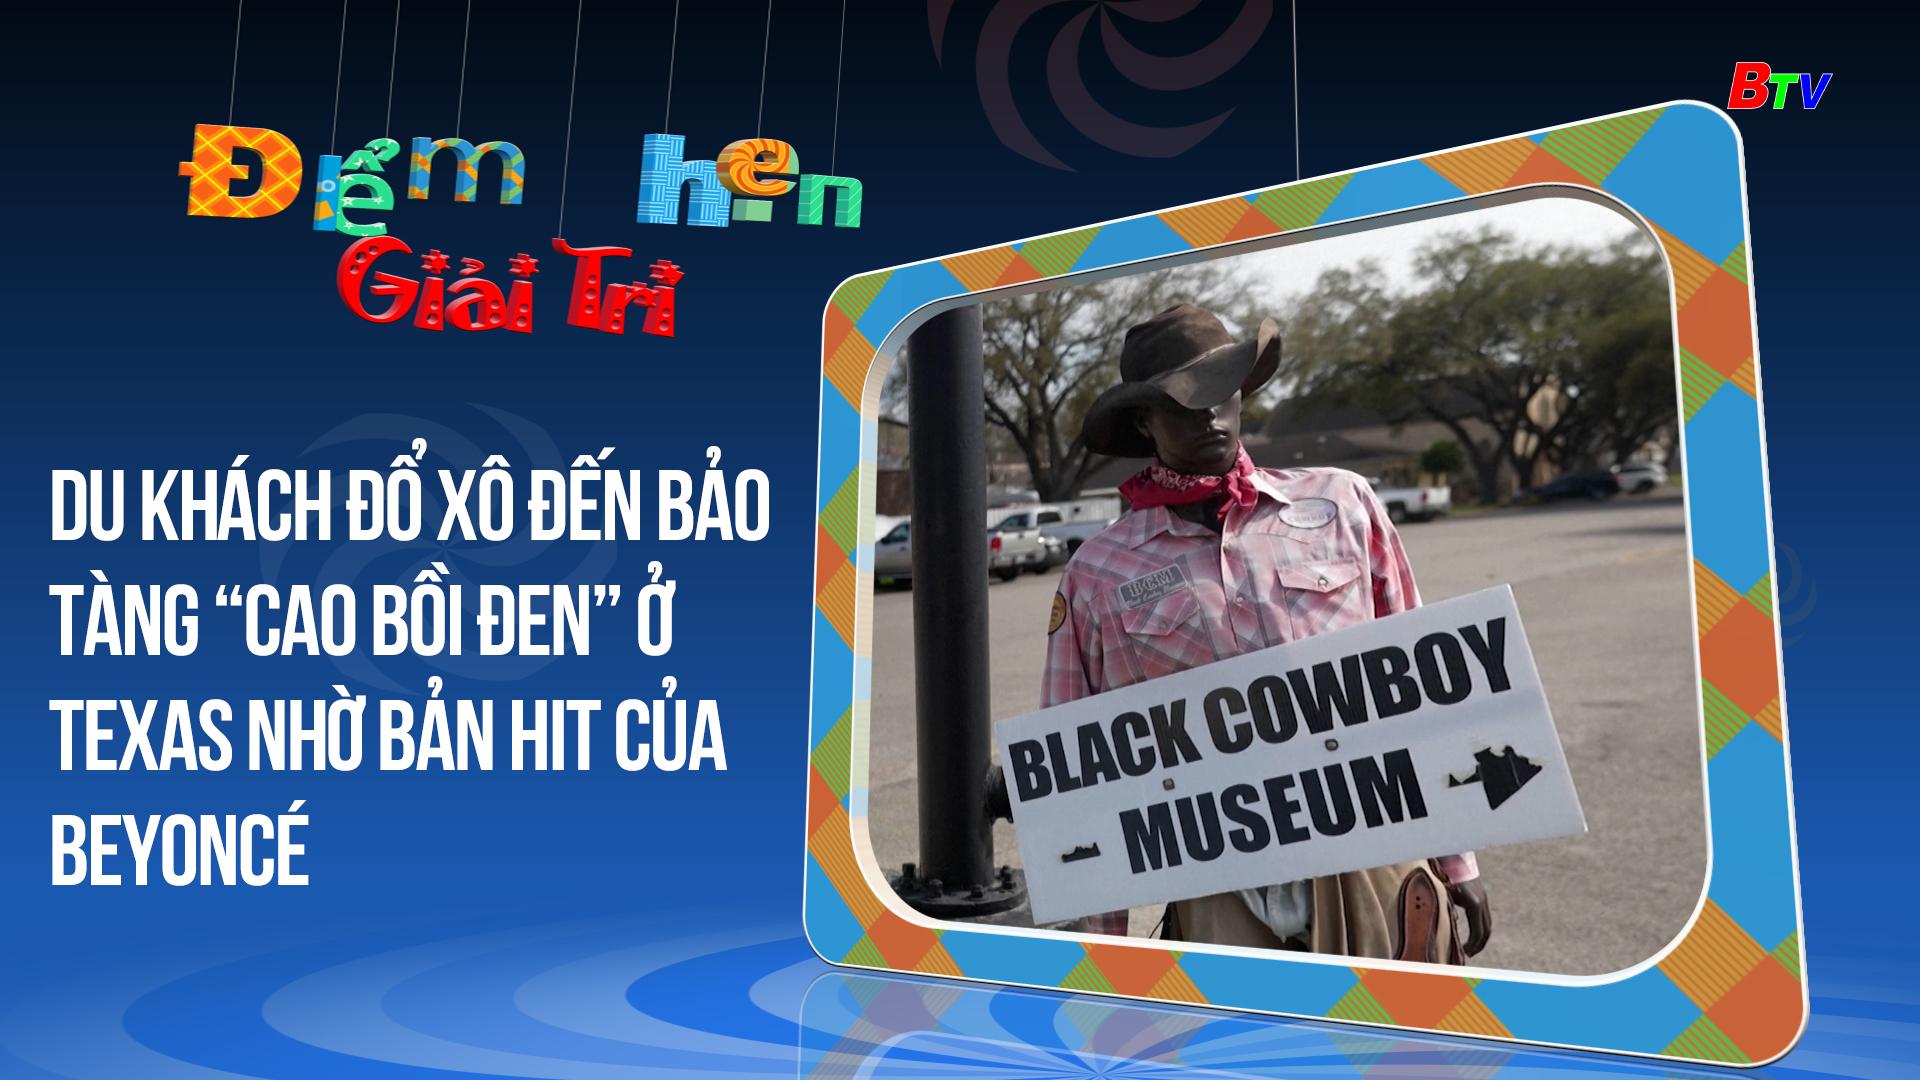 Du khách đổ xô đến bảo tàng “Cao bồi đen” ở Texas nhờ bản hit của Beyoncé | Điểm hẹn giải trí | 1/3/2024